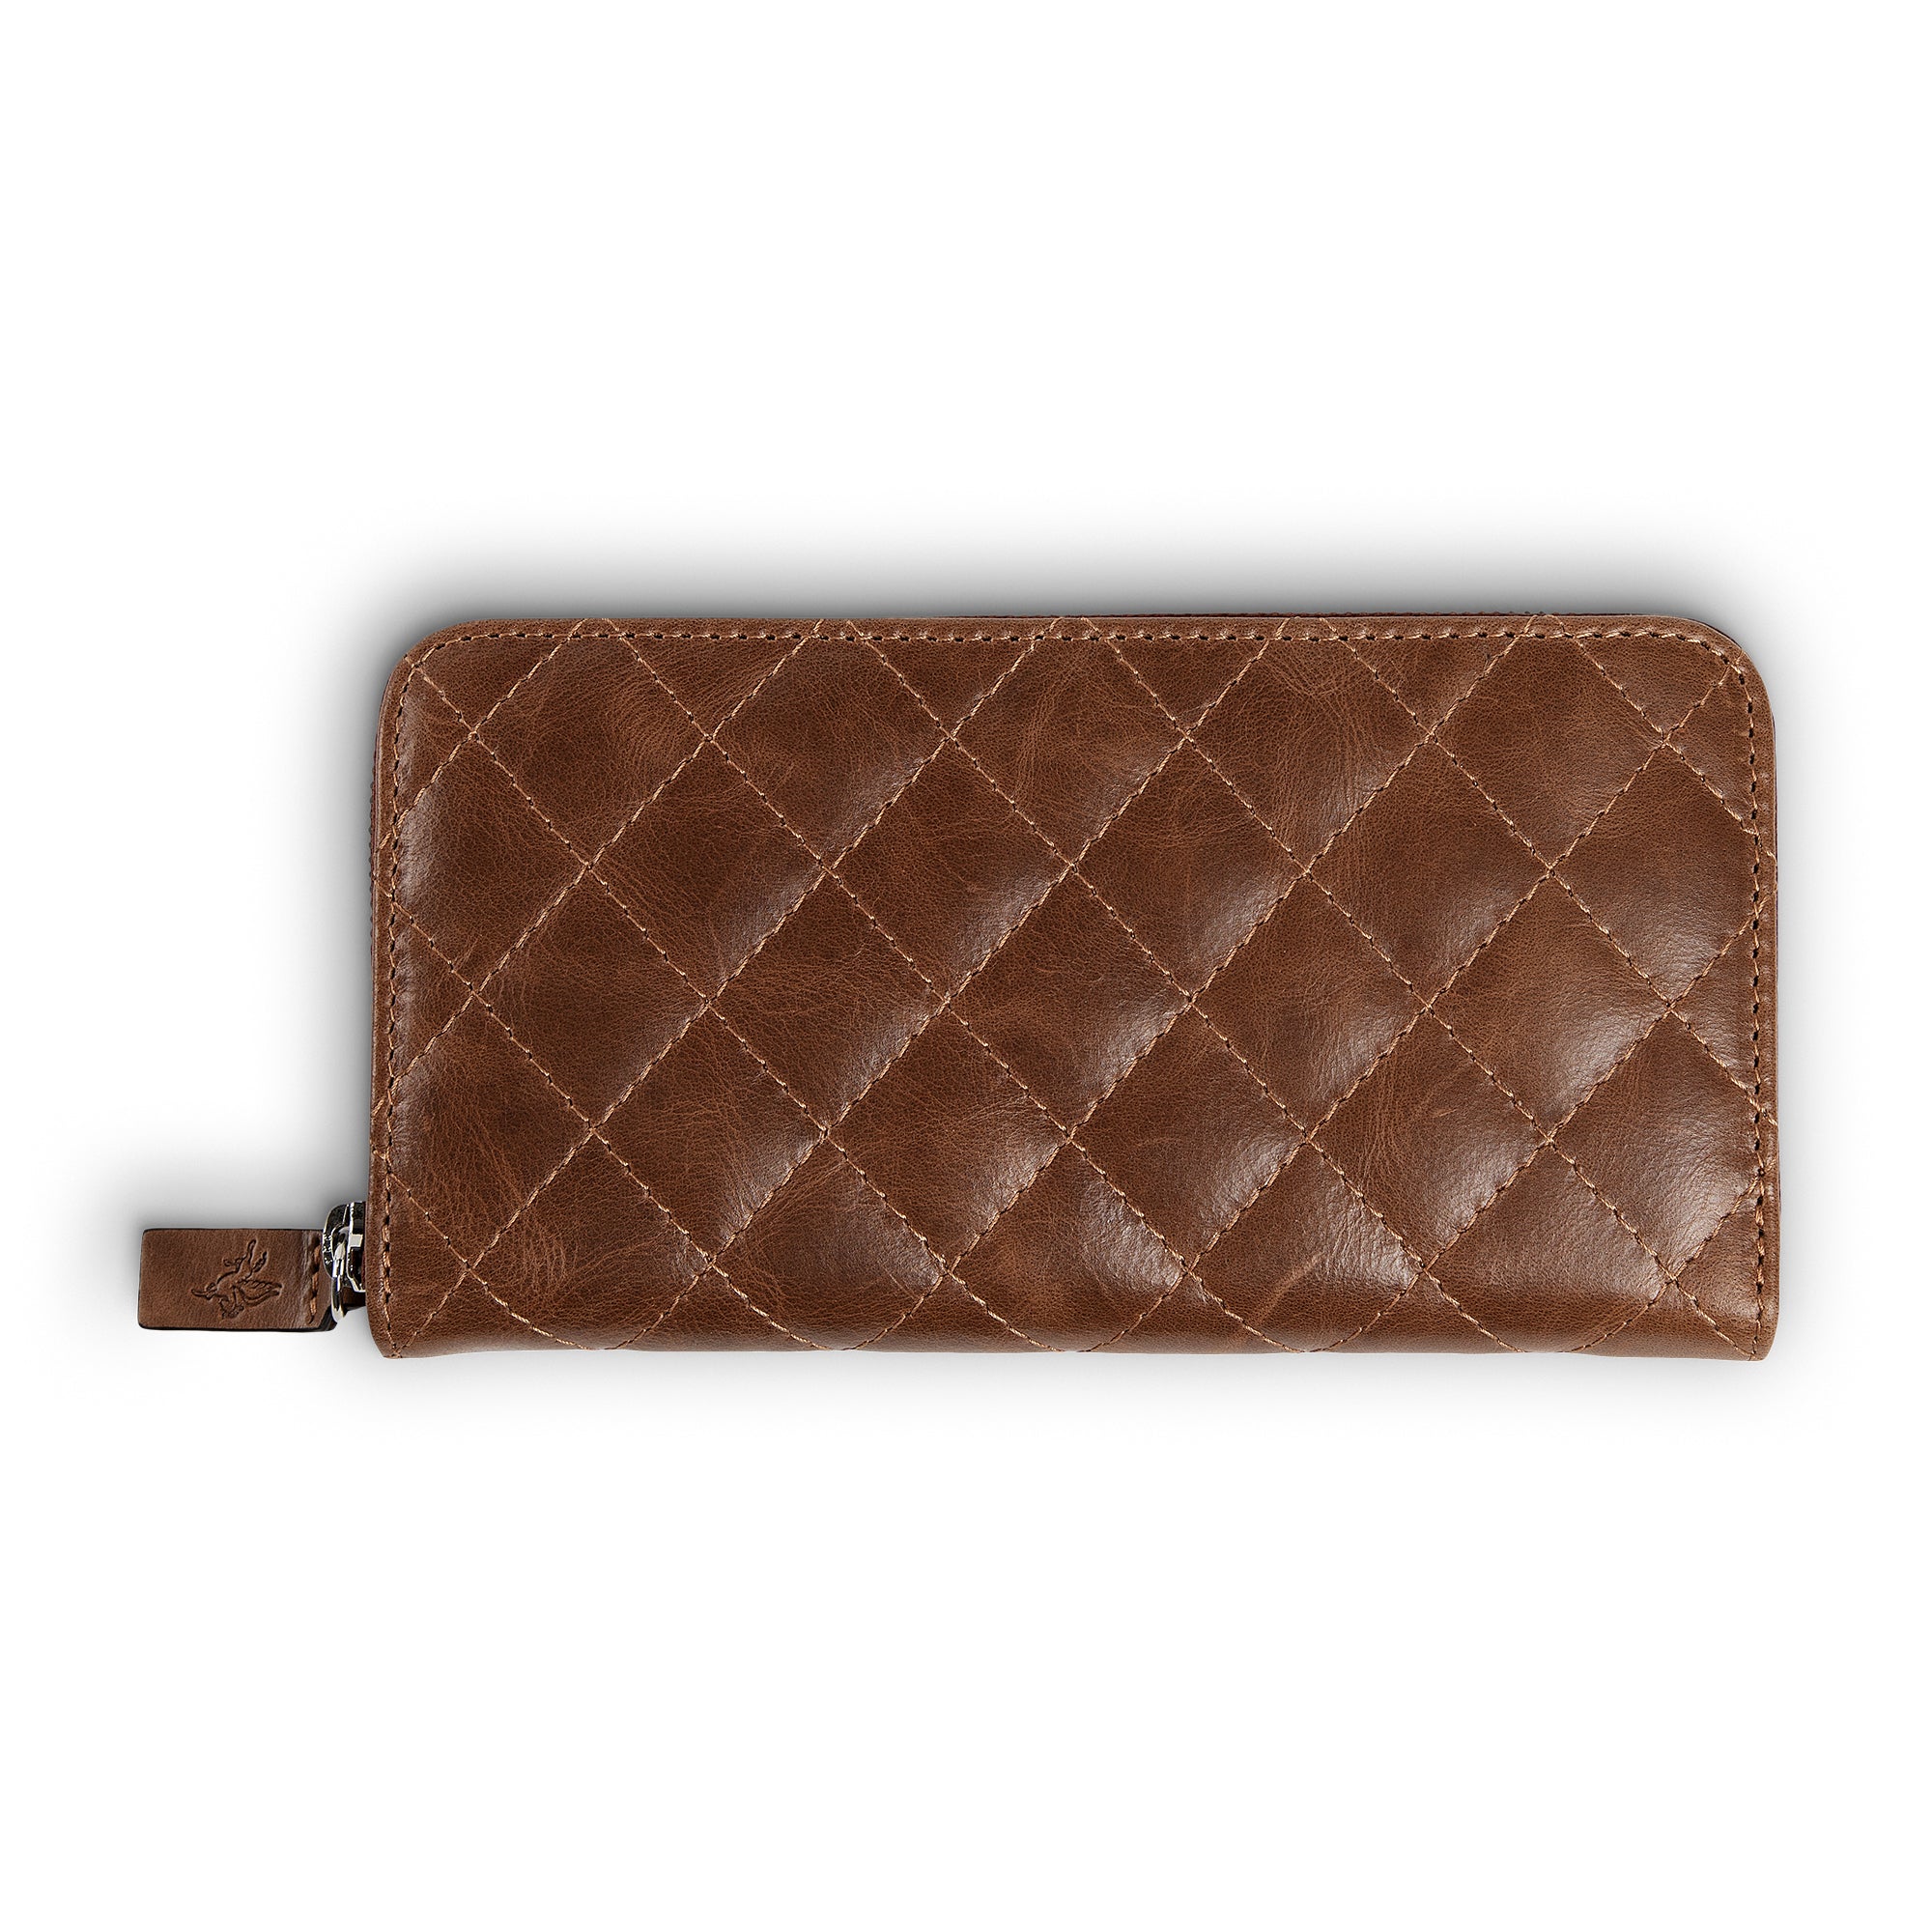 PORTER RFID WALLET - Saddle Leather 174631007 